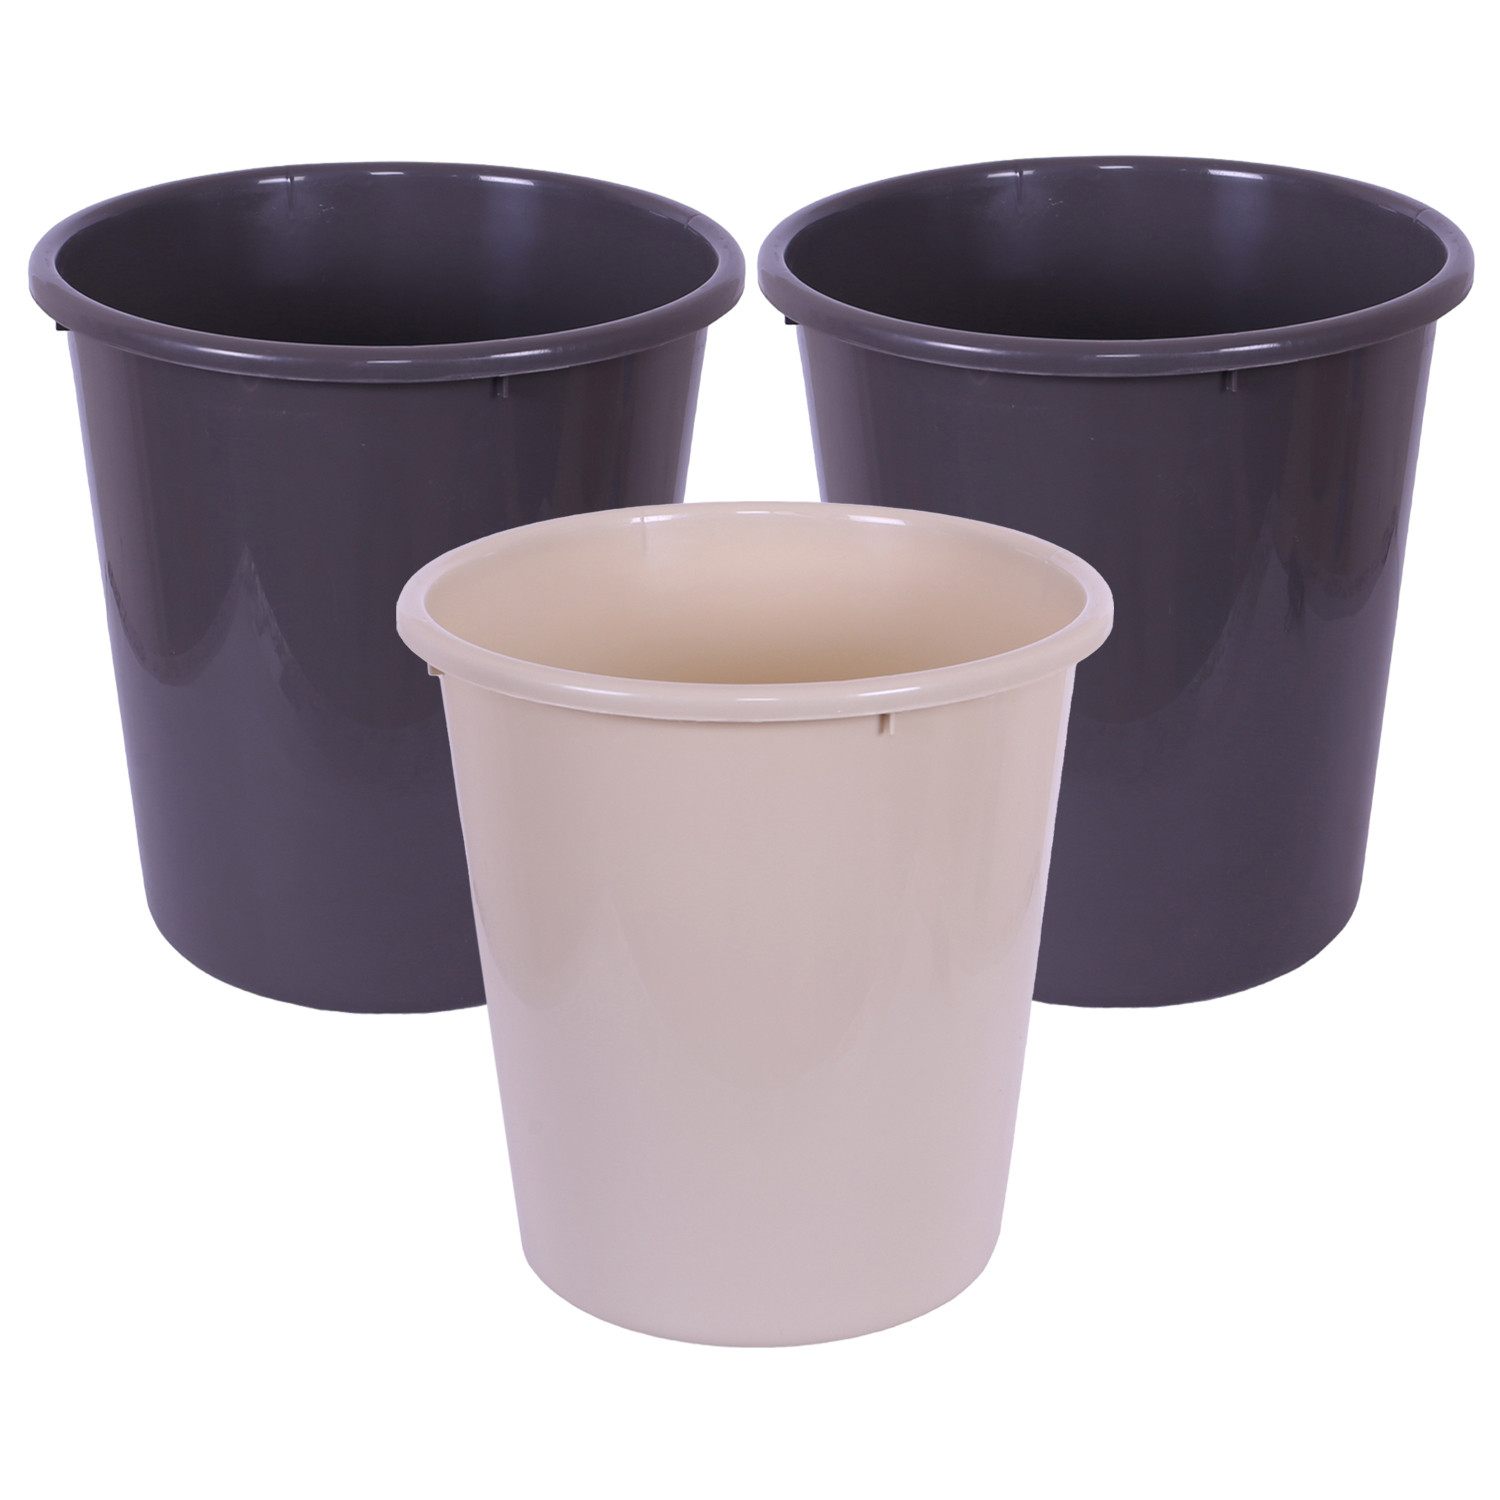 Kuber Industries Dustbin | Open Dustbin | Plastic Garbage Dustbin | Dustbin For Kitchen | Dustbin For Bathroom | Office Dustbin | Plain Sada Dustbin | 13 LTR | Pack of 3 | Multi